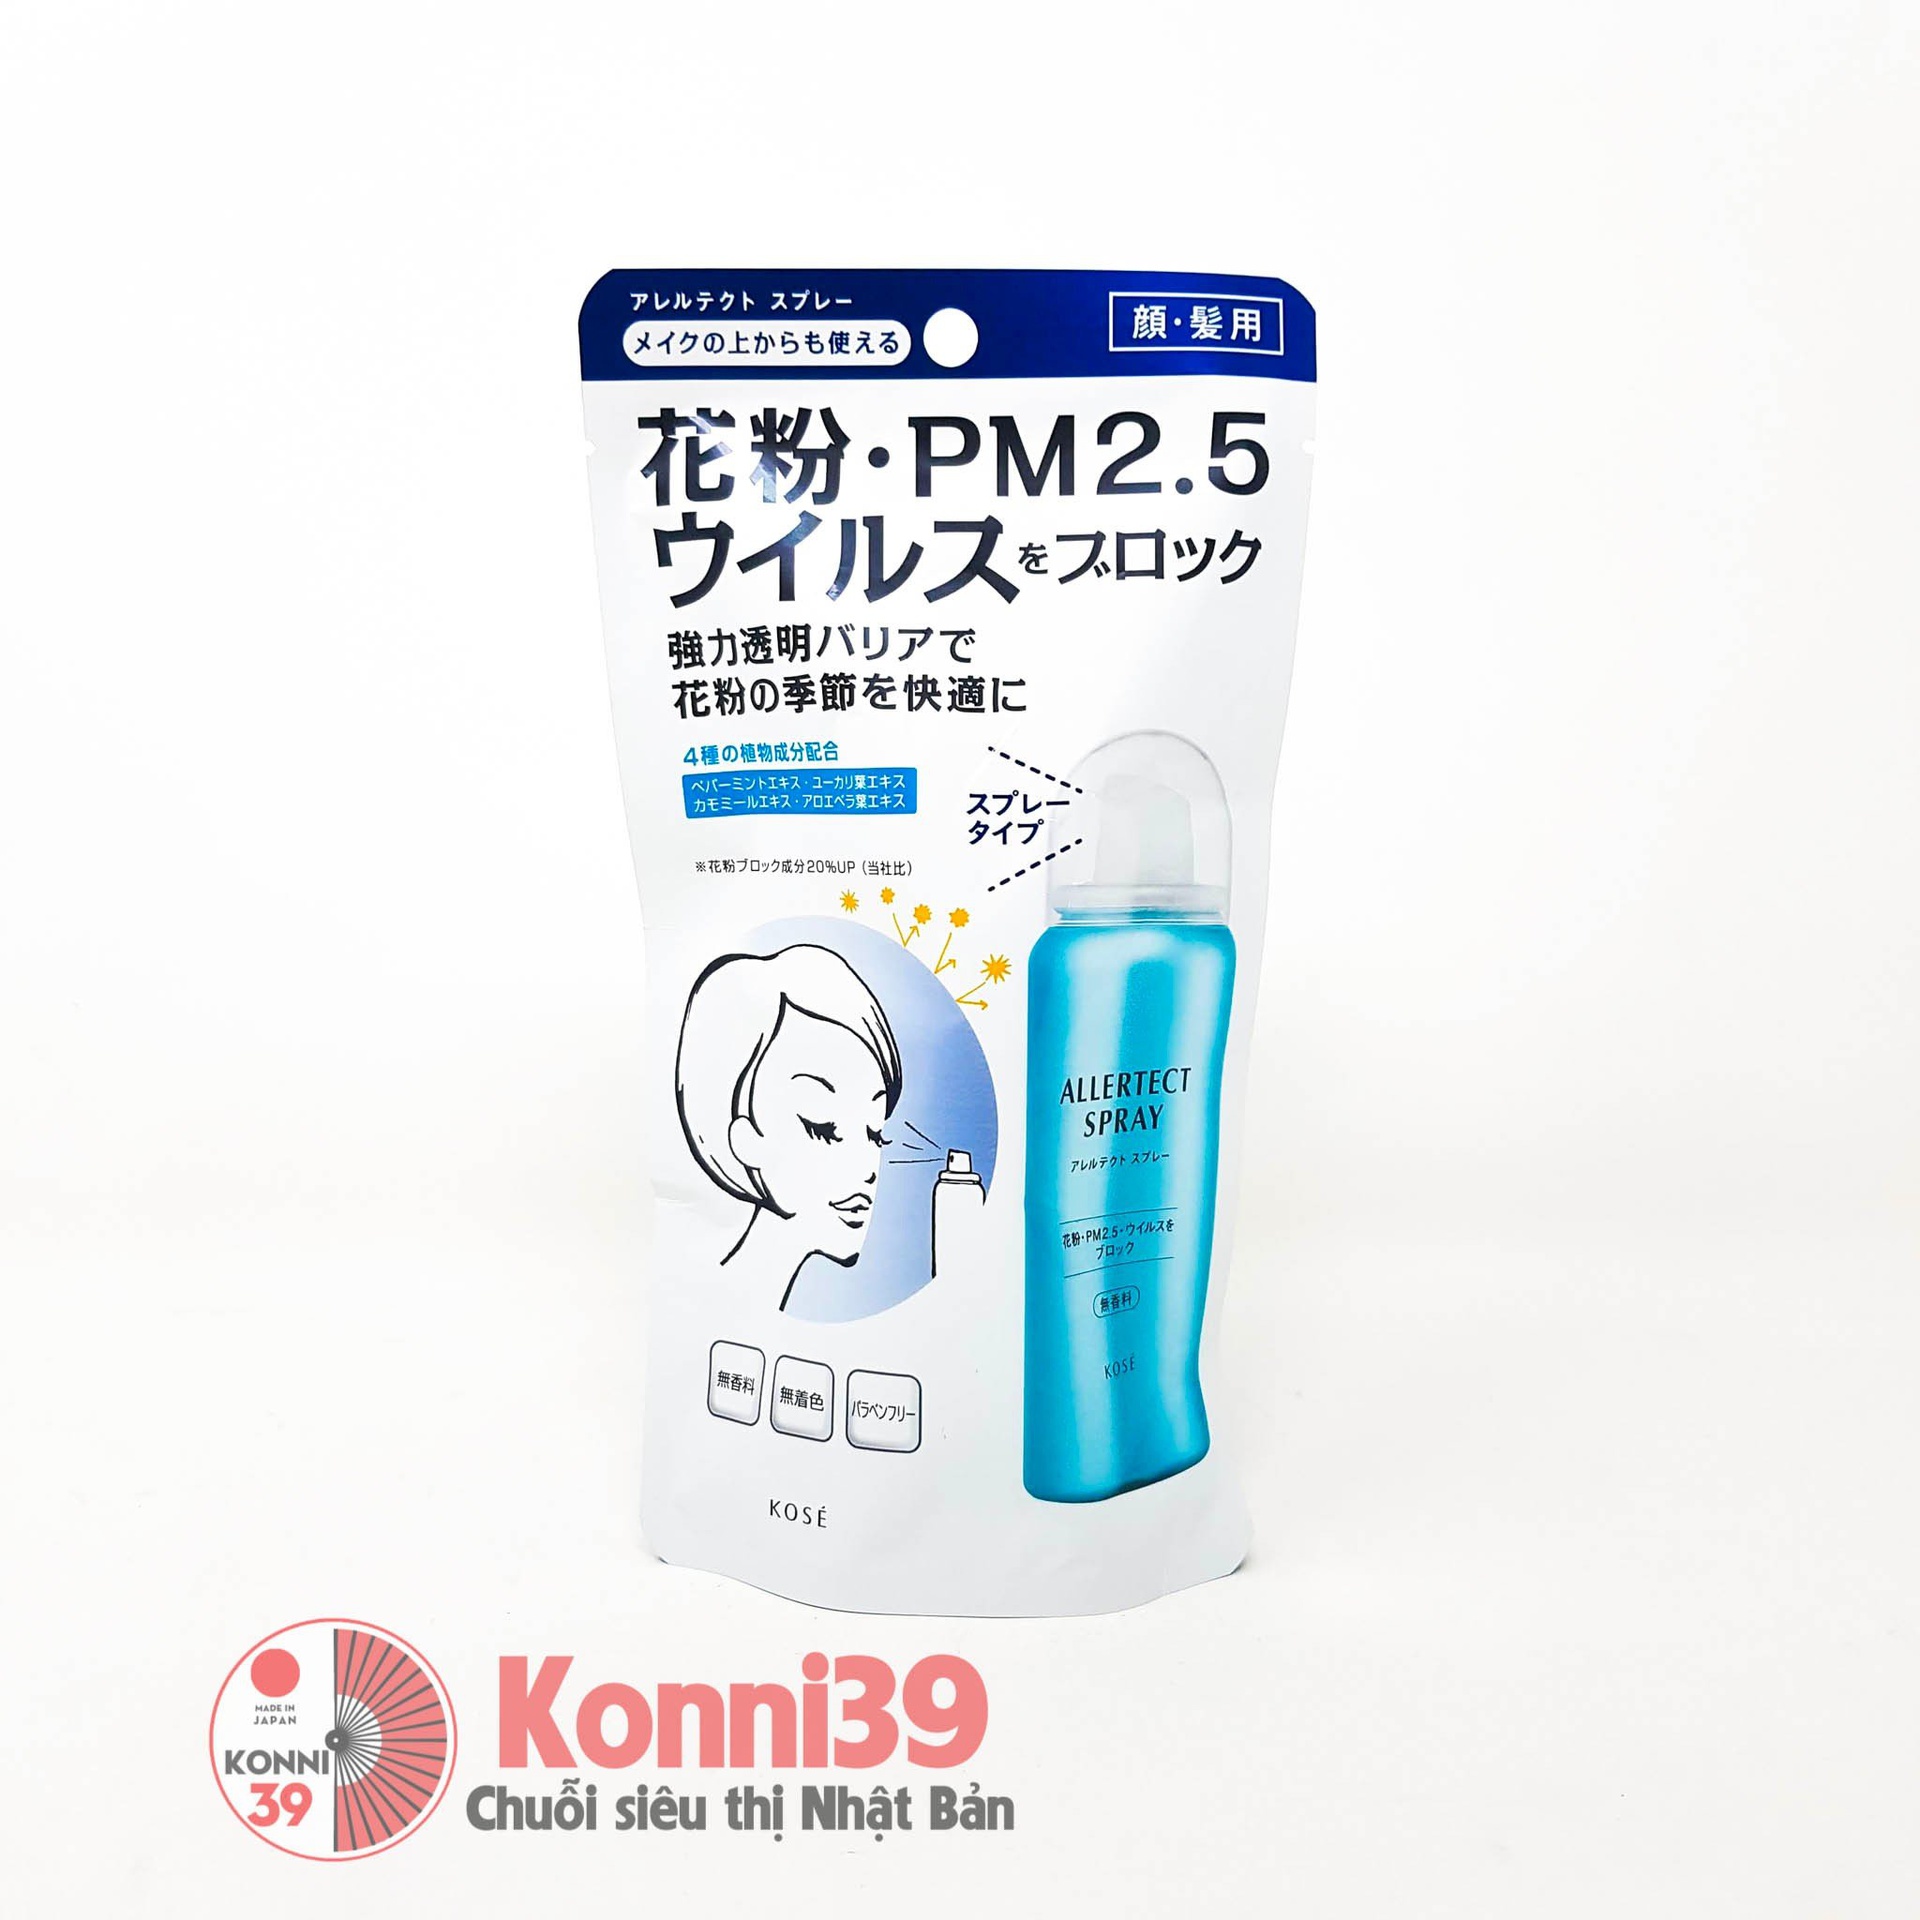 Xịt kháng khuẩn Kose Allertect Spray chống virus, phấn hoa, PM 2.5 50g (dành cho mặt và tóc)